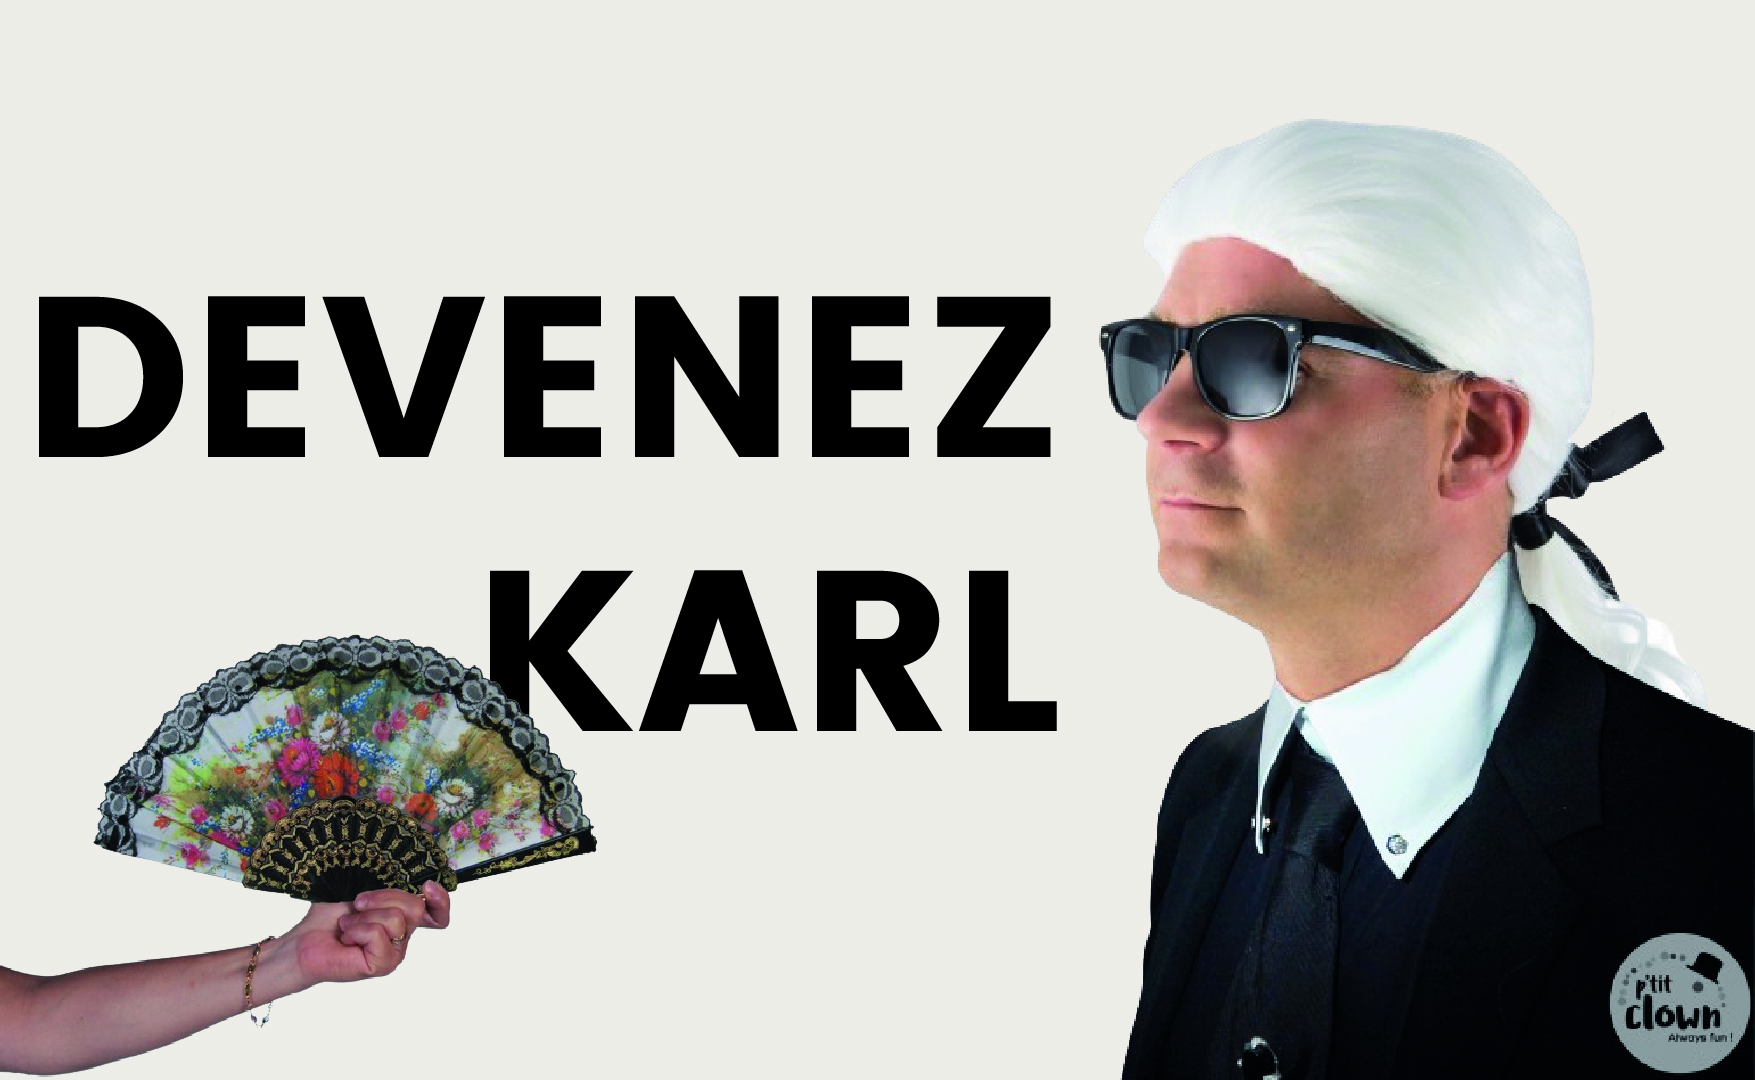 Devenez Karl